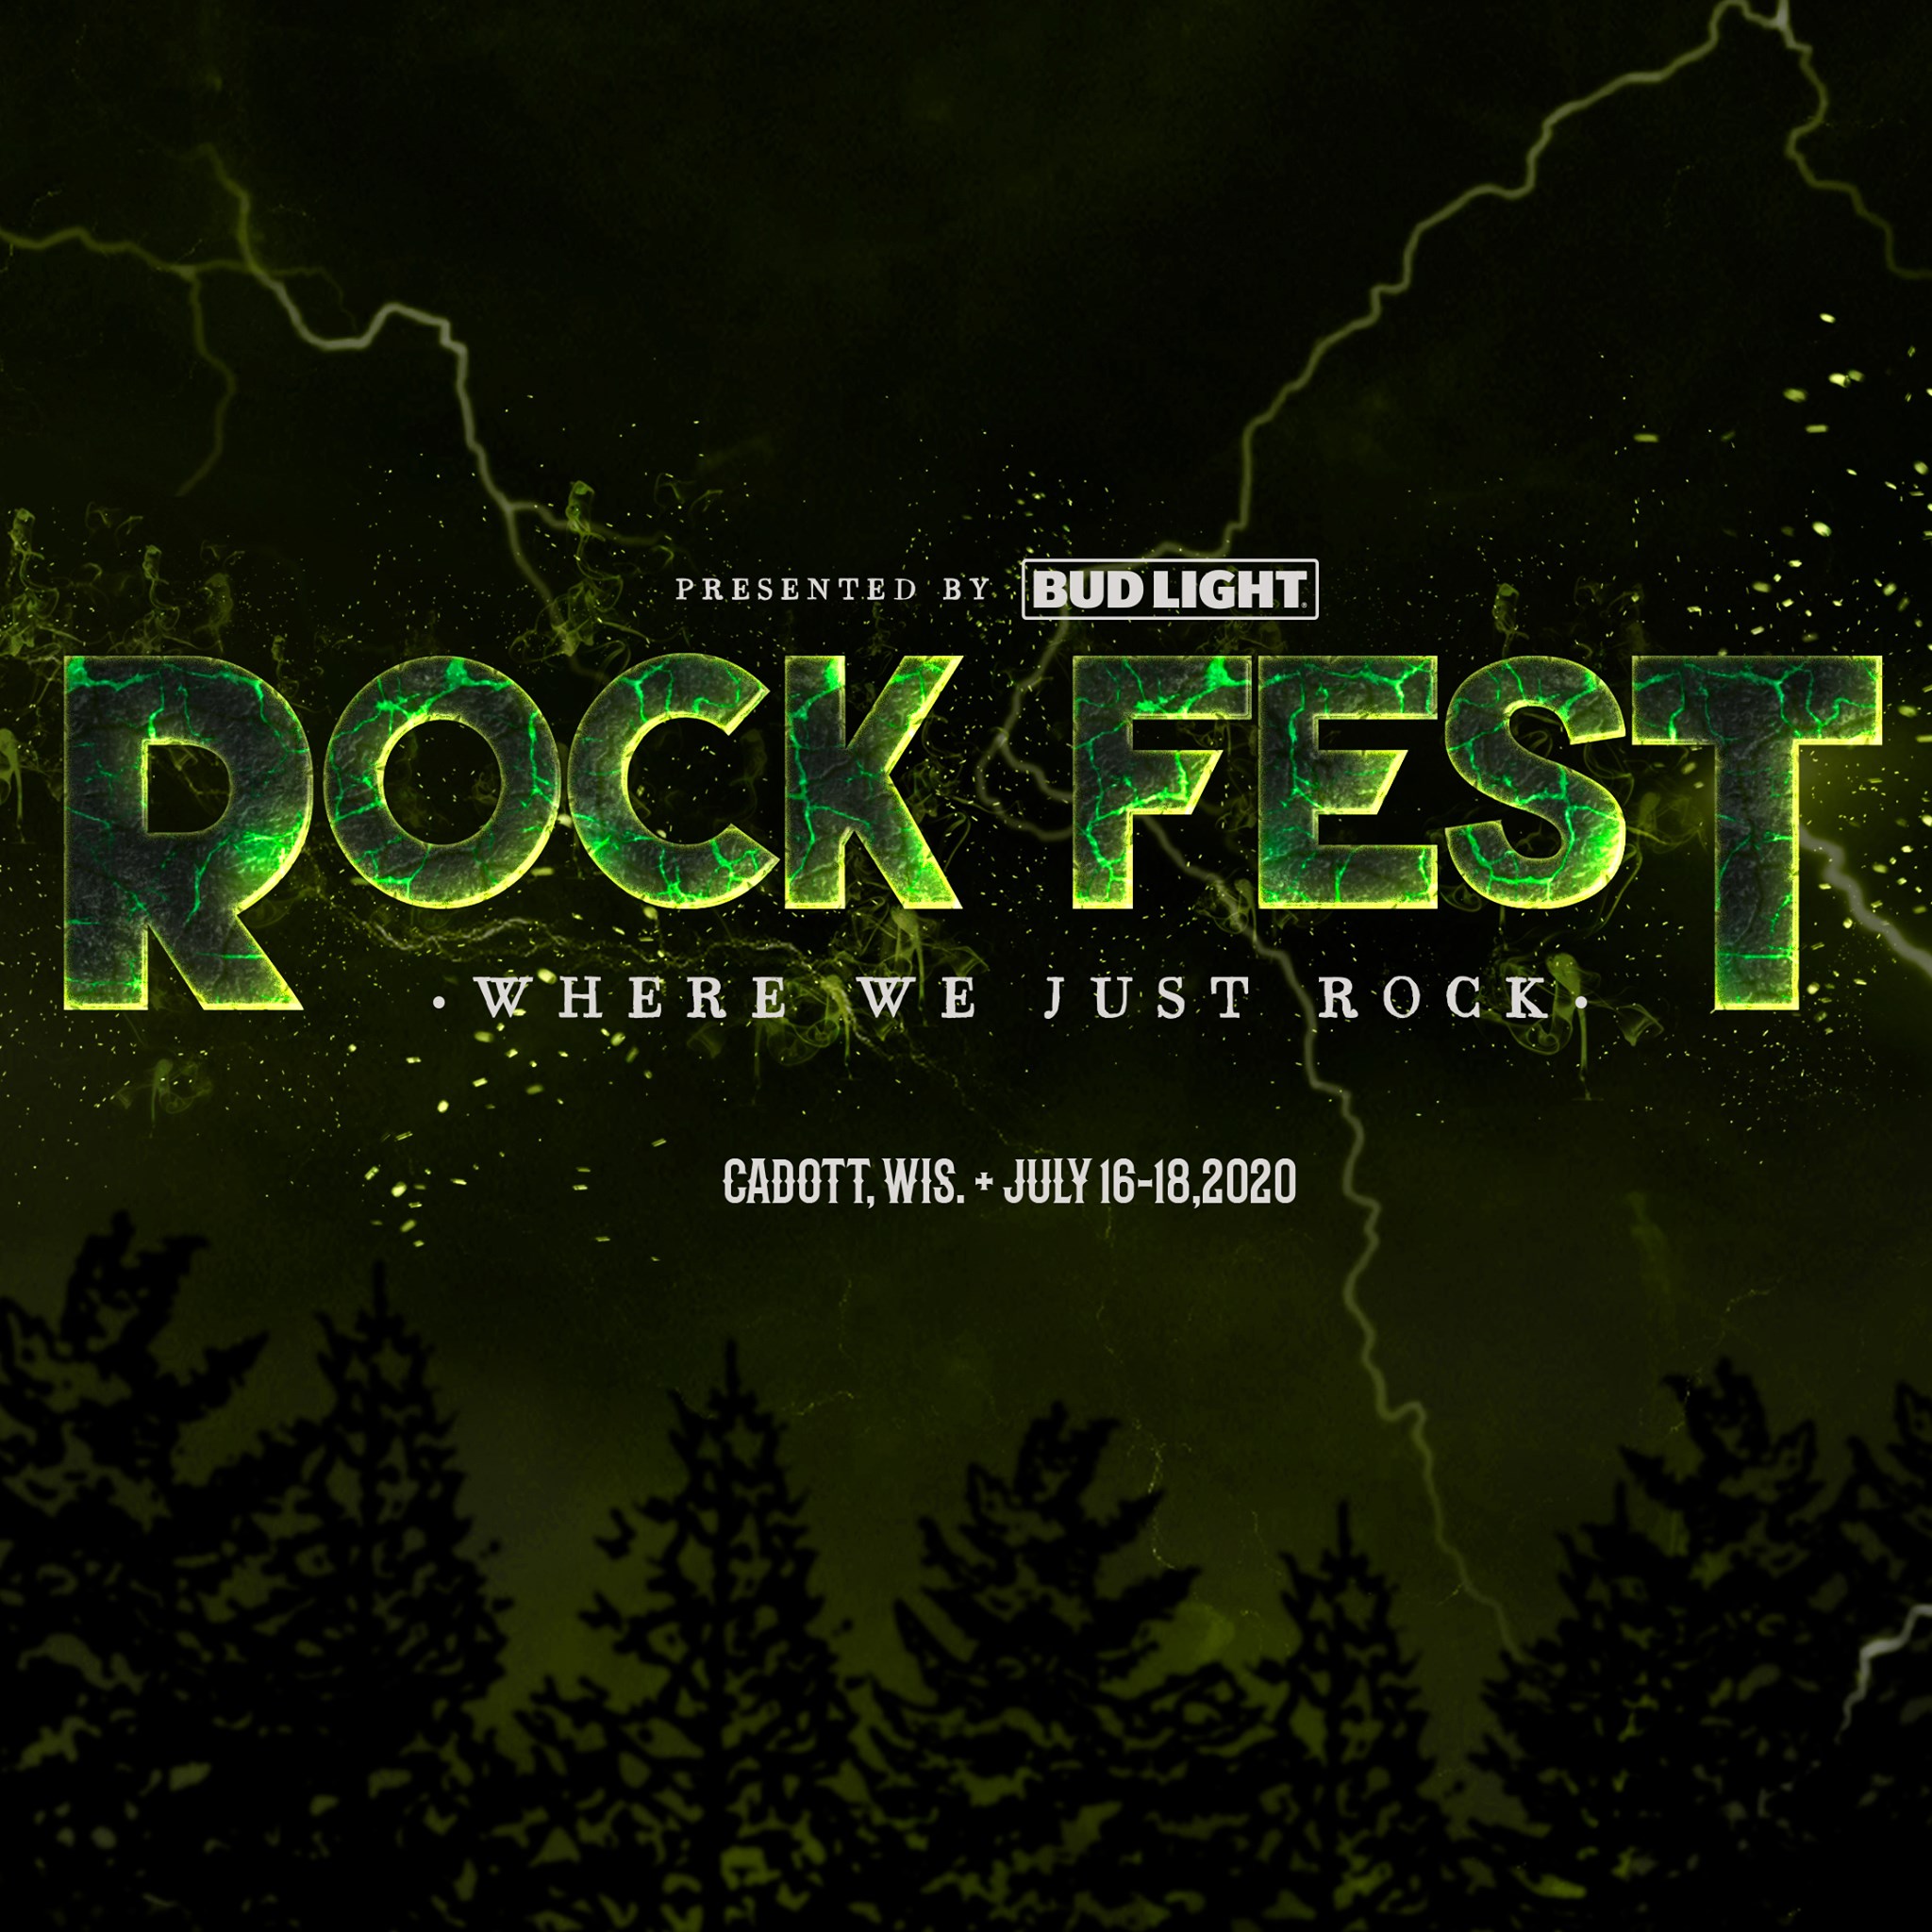 Rock Fest 2020 Lineup Announced: Disturbed, Slipknot, Limp Bizkit, More